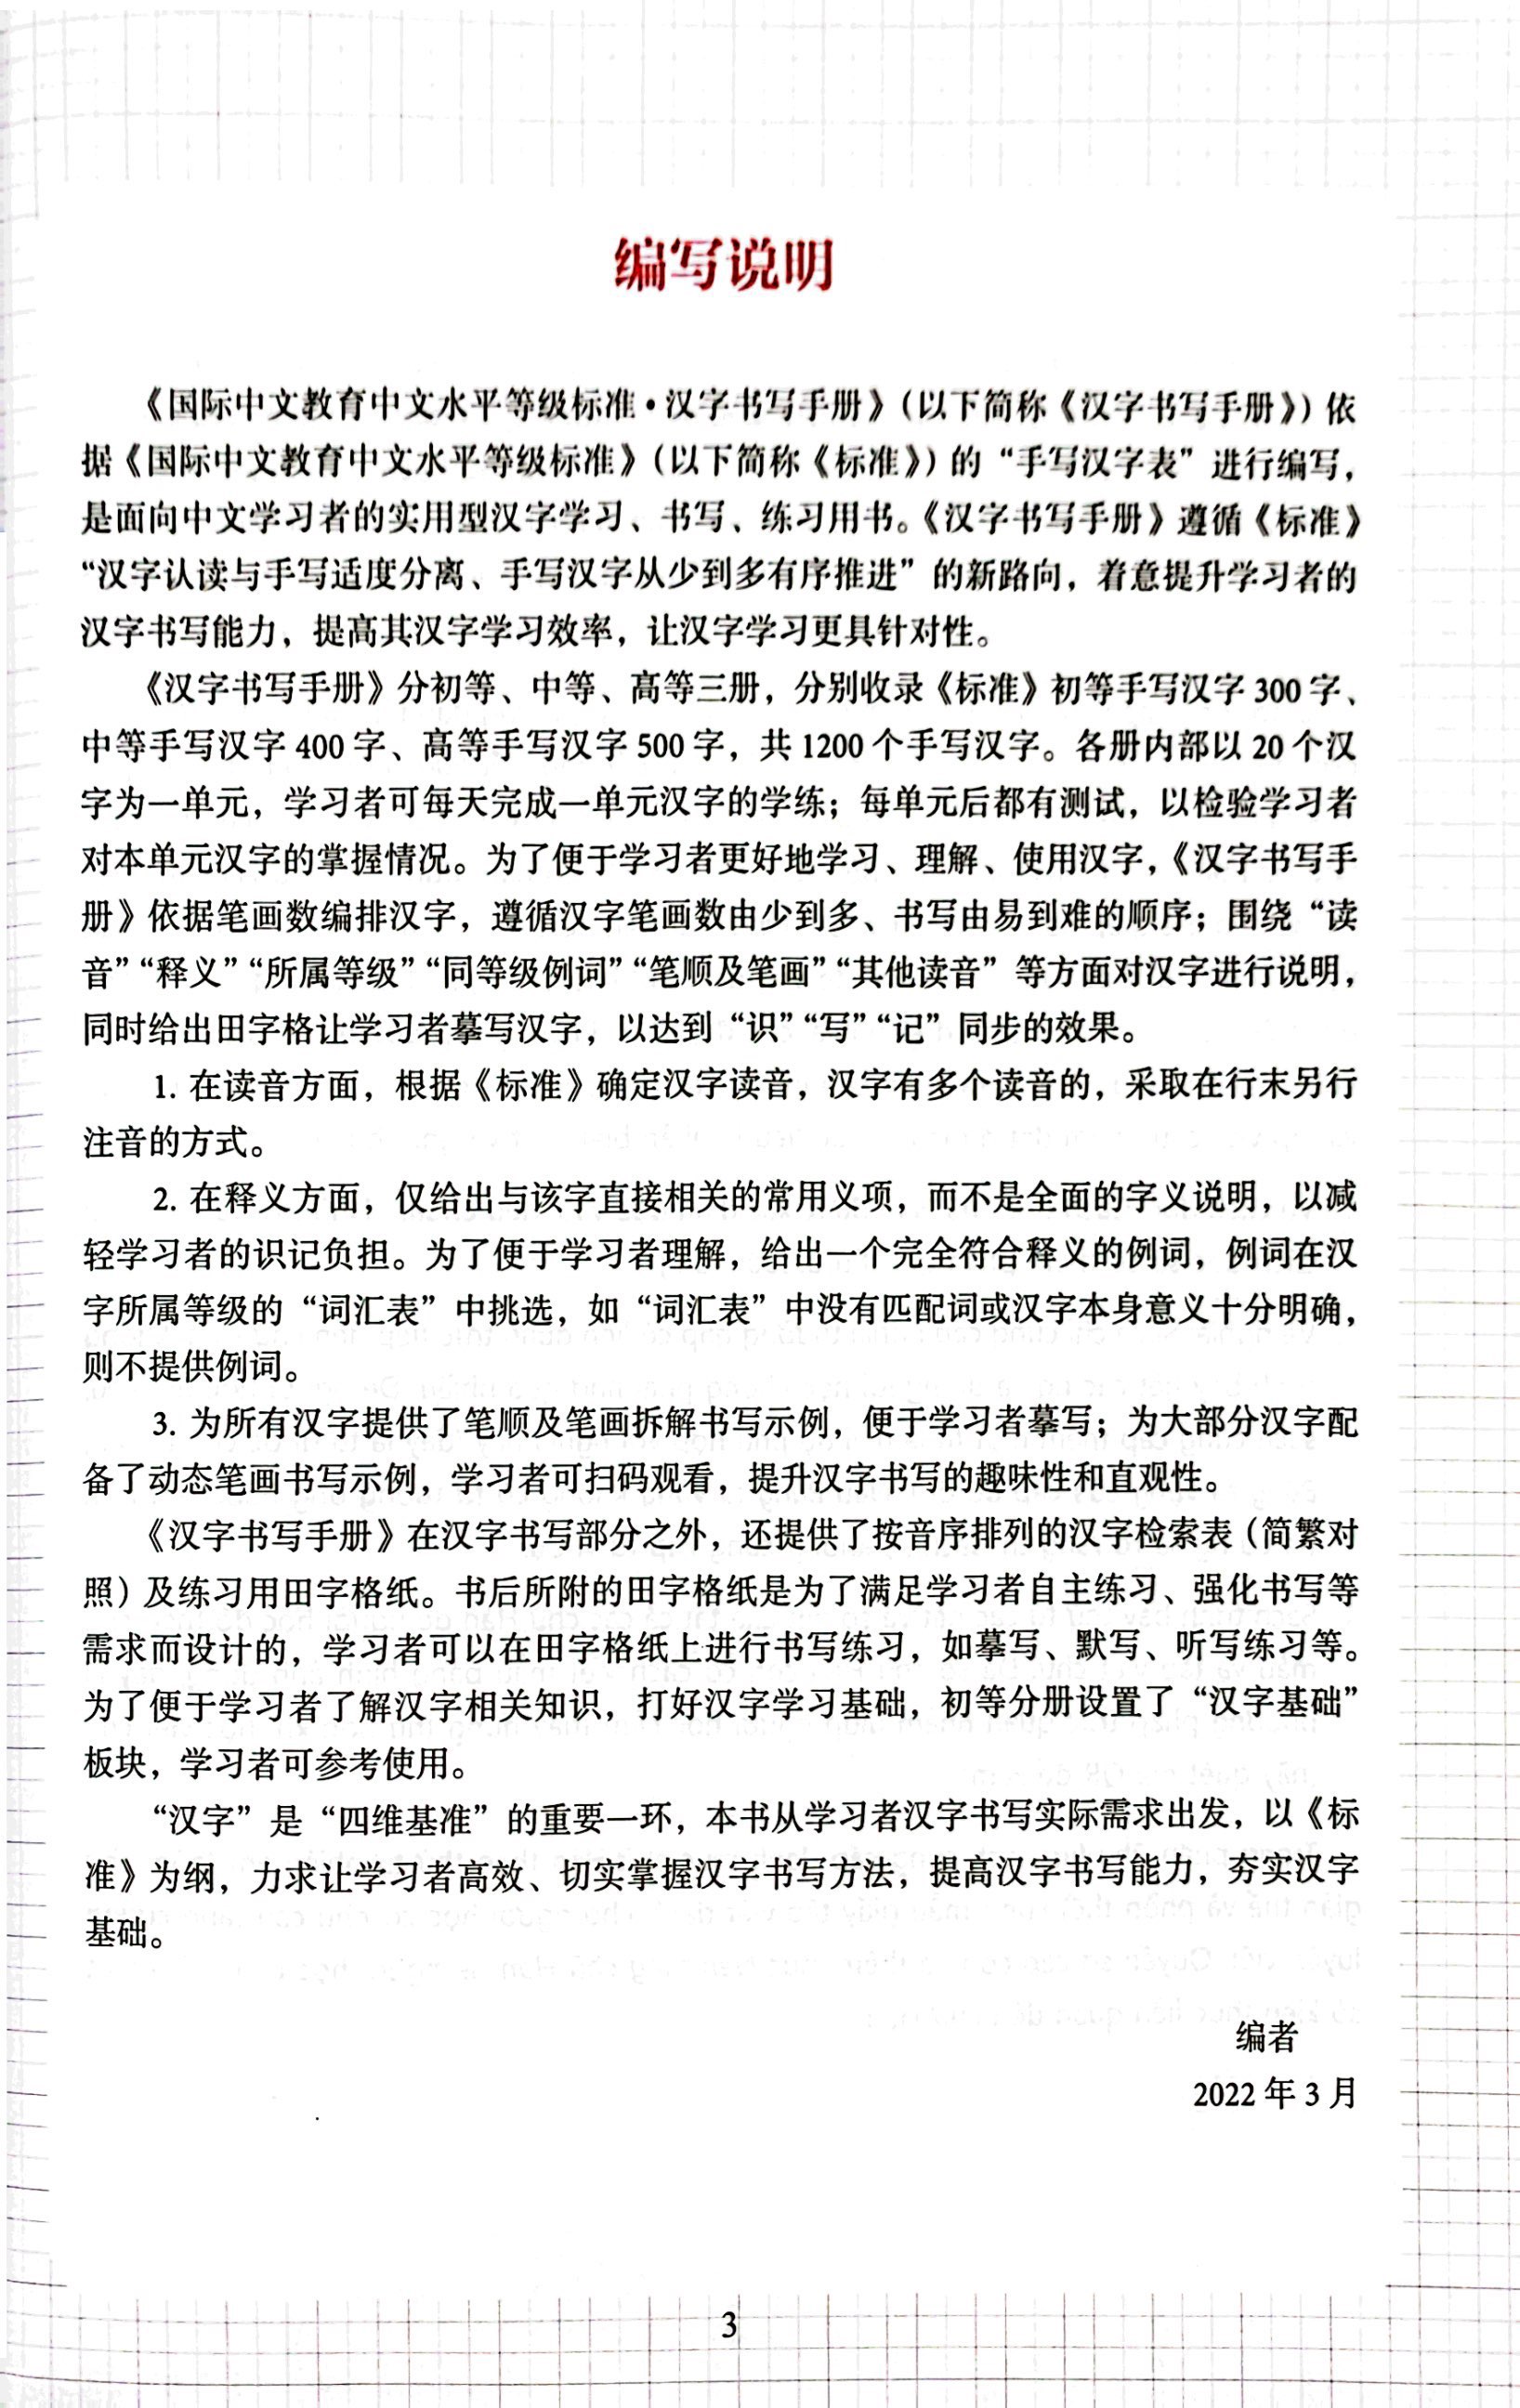 Tiêu Chuẩn Các Cấp Độ Tiếng Trung Trong Giáo Dục Tiếng Trung Quốc Tế - Giáo Trình Tập Viết Chữ Hán - Sơ Cấp PDF